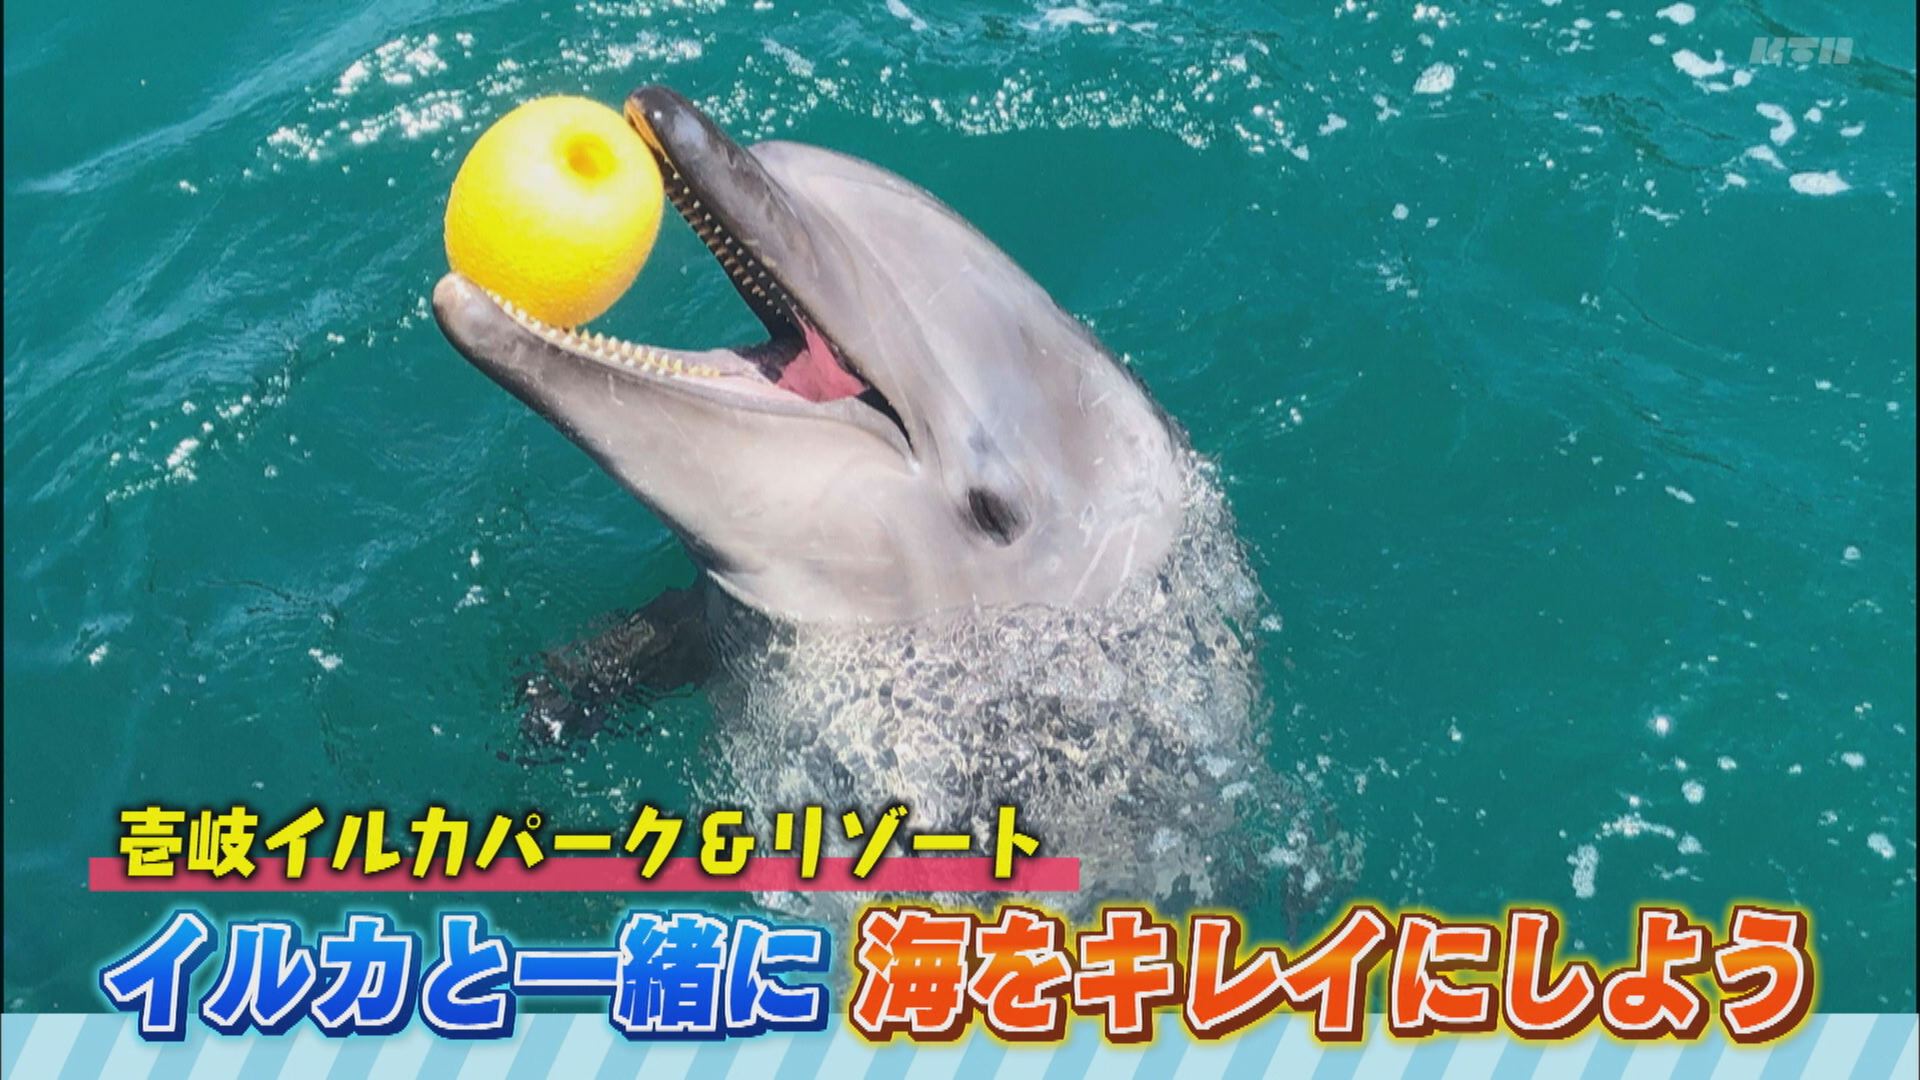 ヨジマル イルカと一緒に海をきれいにしよう 海と日本project In ながさき